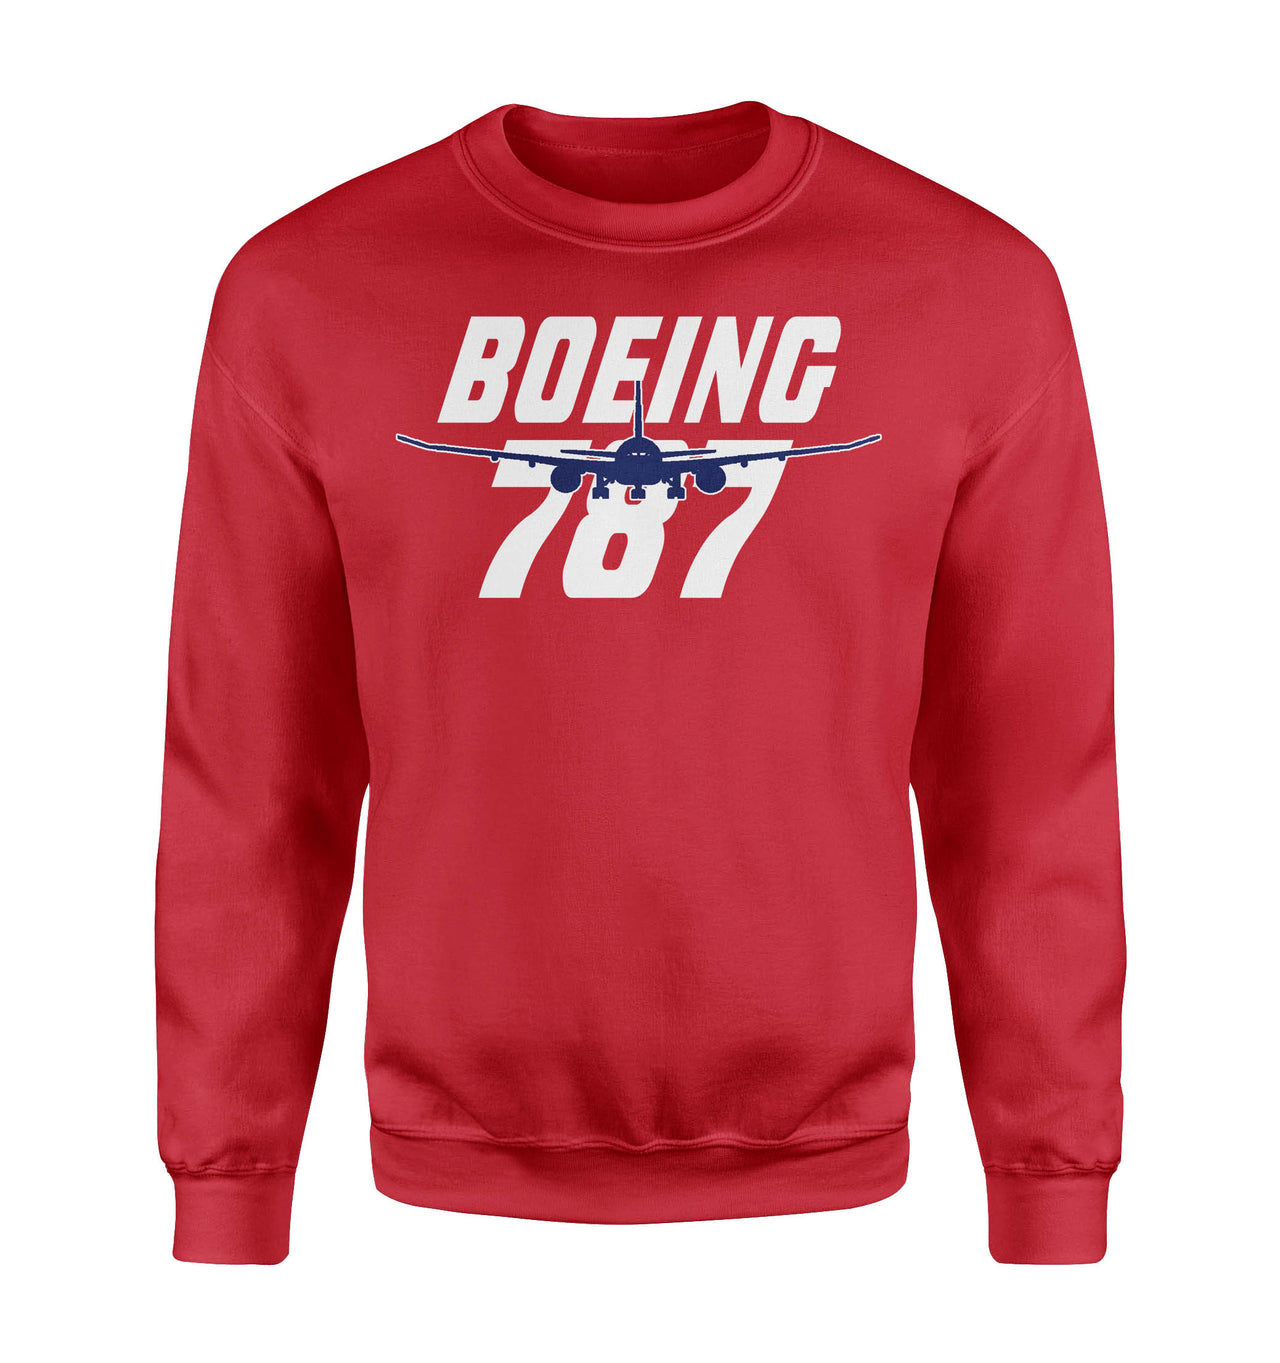 Amazing Boeing 787 Designed Sweatshirts